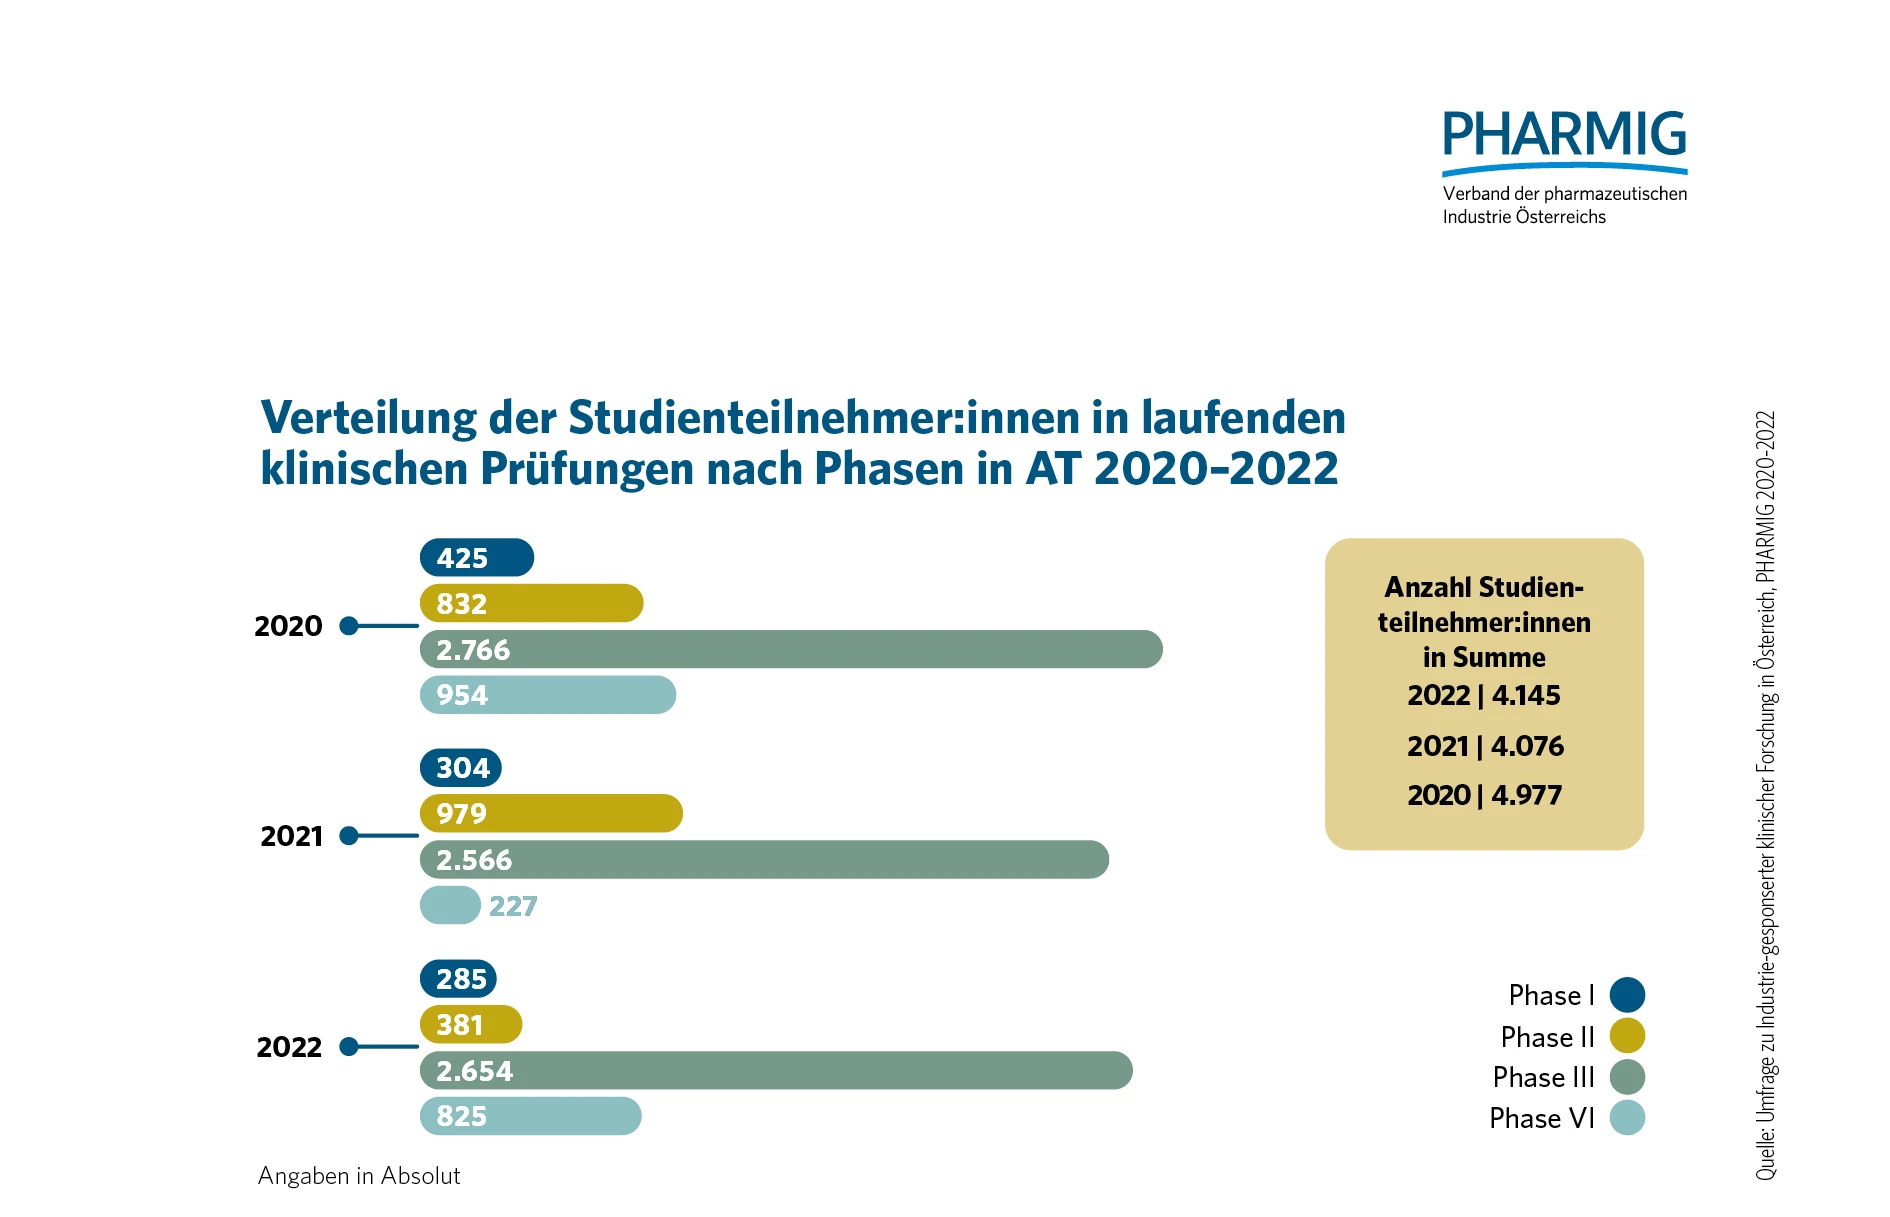 © 4.2 Verteilung der Studienteilnehmenden in laufenden klinischen Prüfungen nach Phasen (2020-2022)